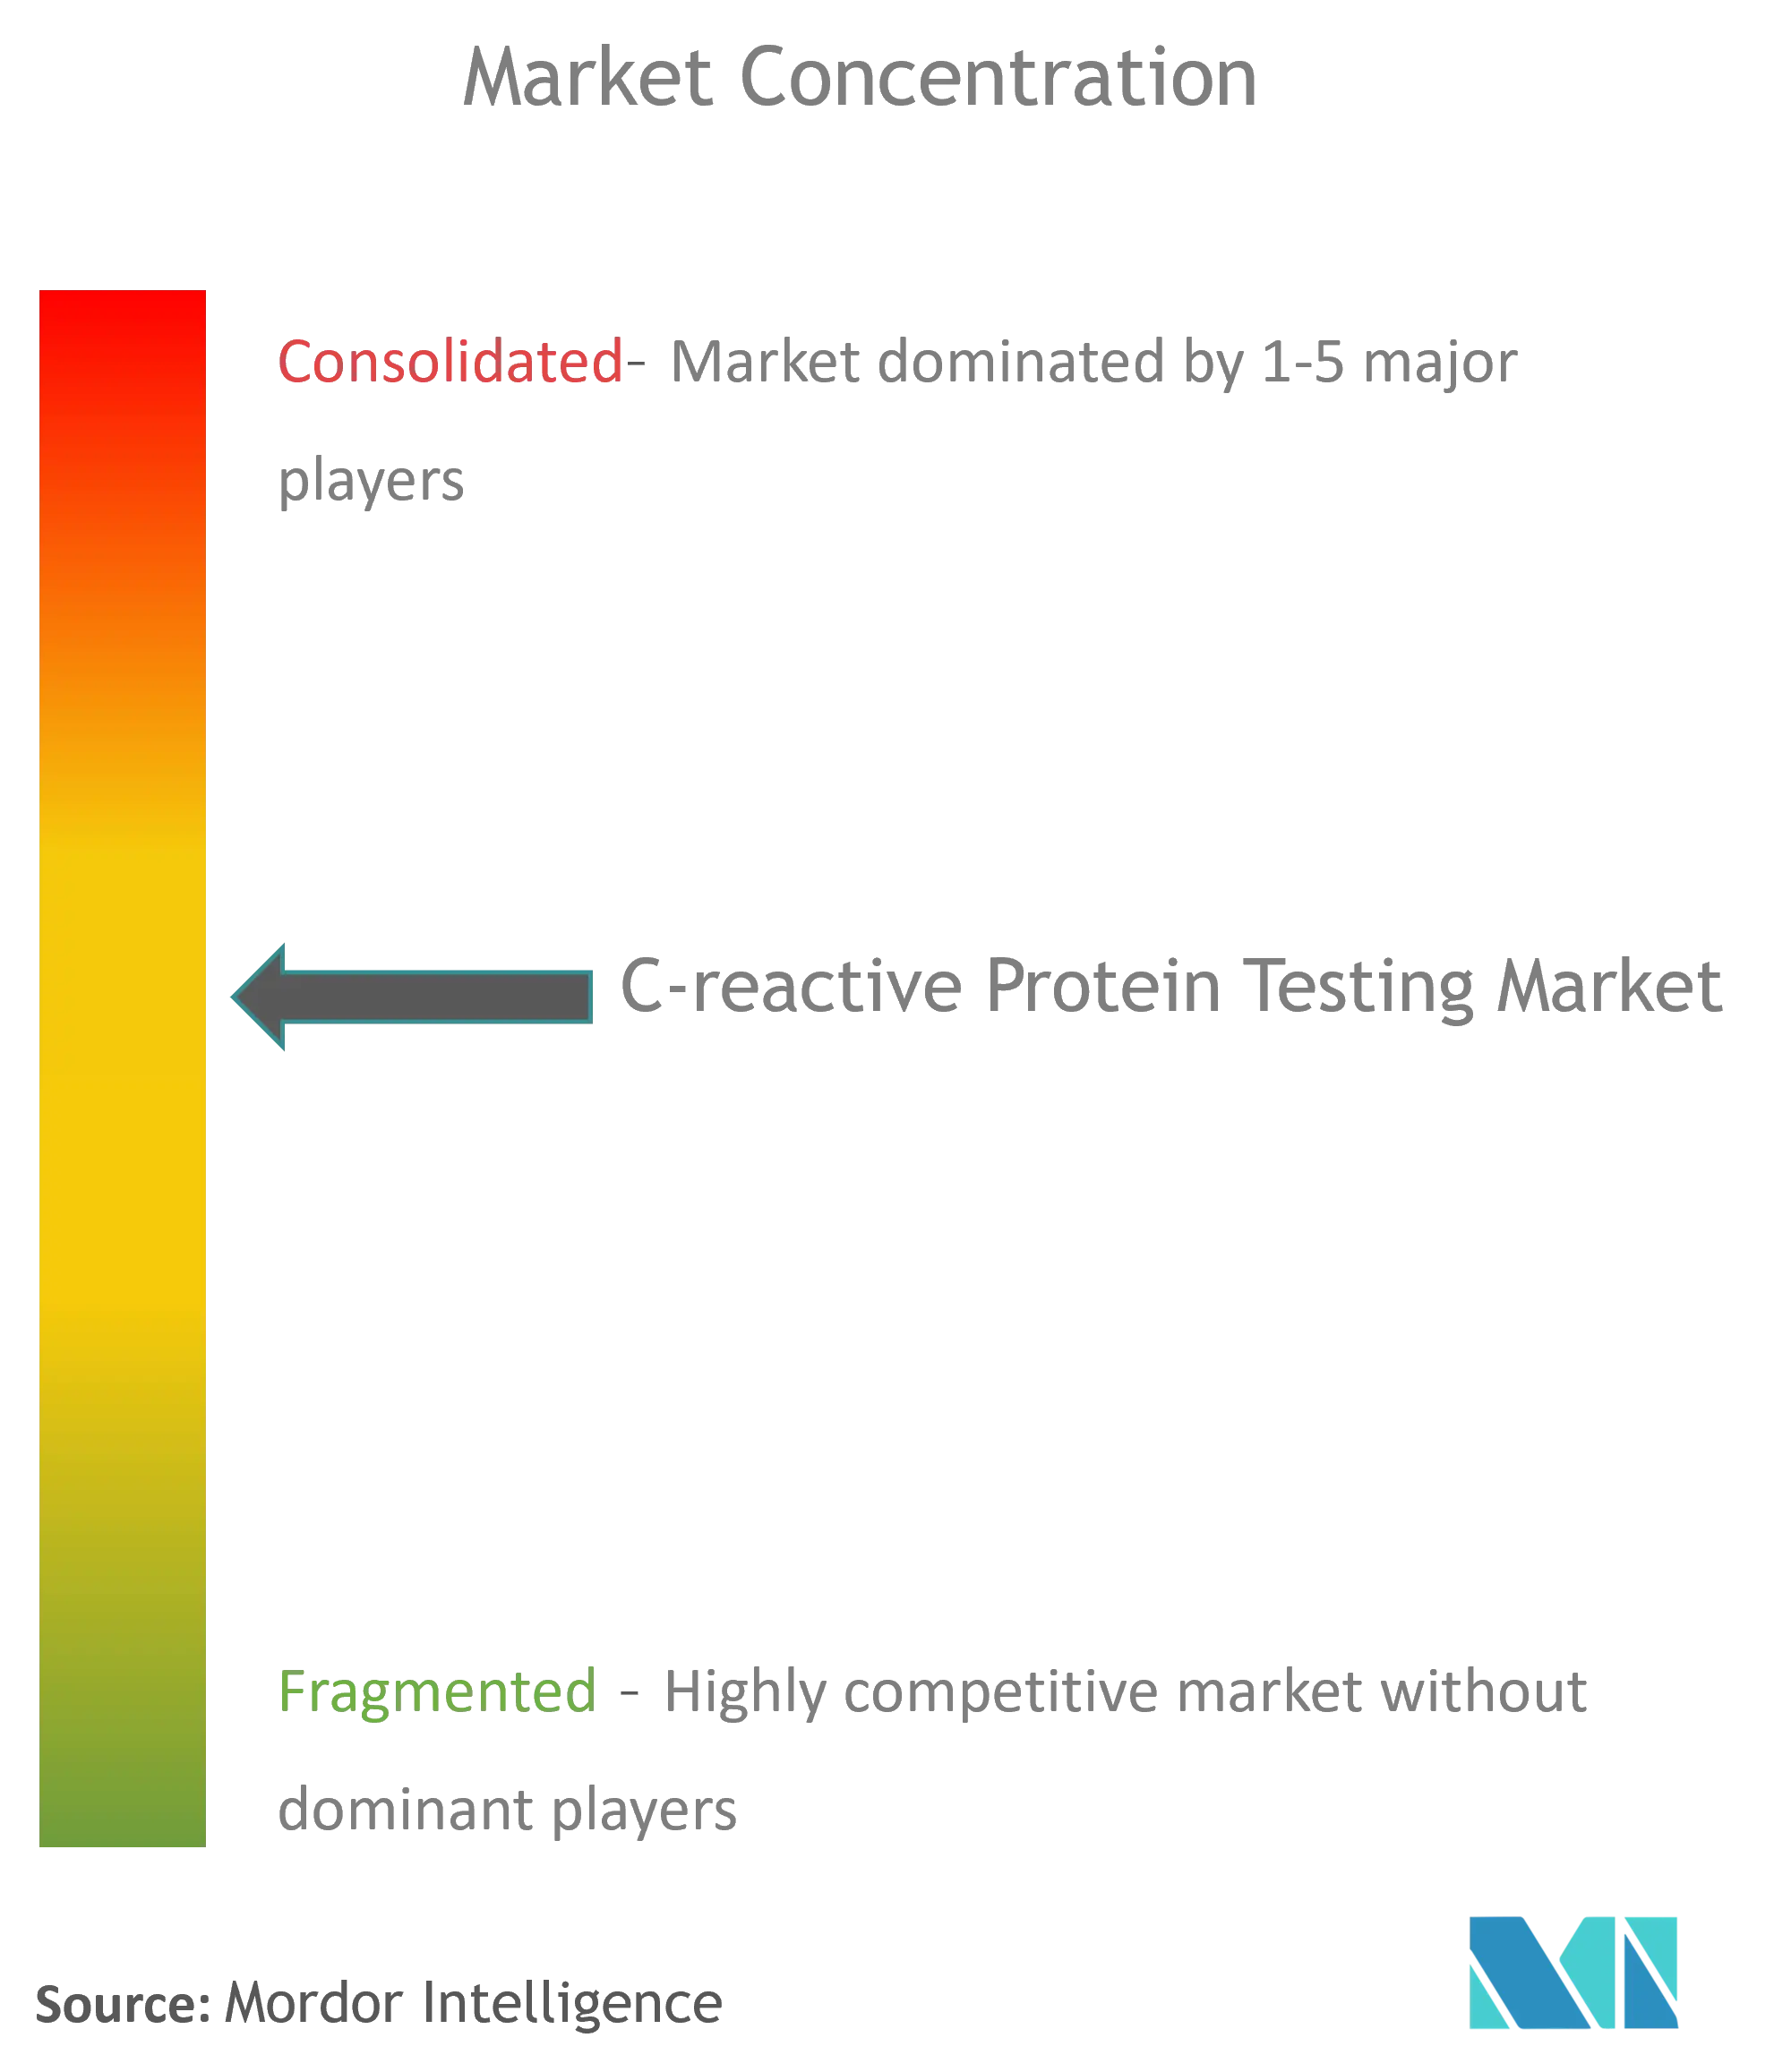 Pruebas globales de proteína C reactivaConcentración del Mercado